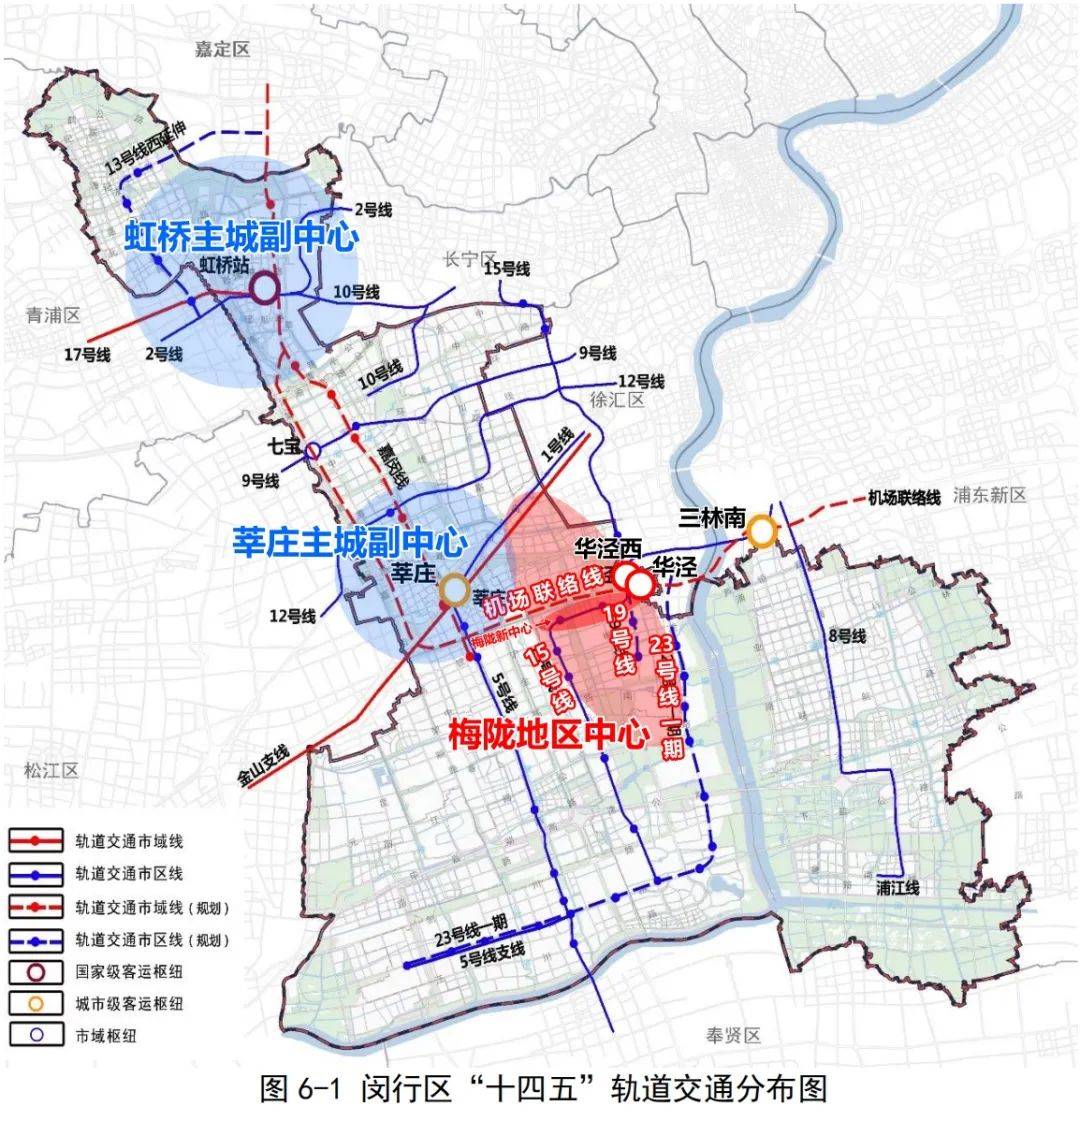 上海梅陇镇地图图片